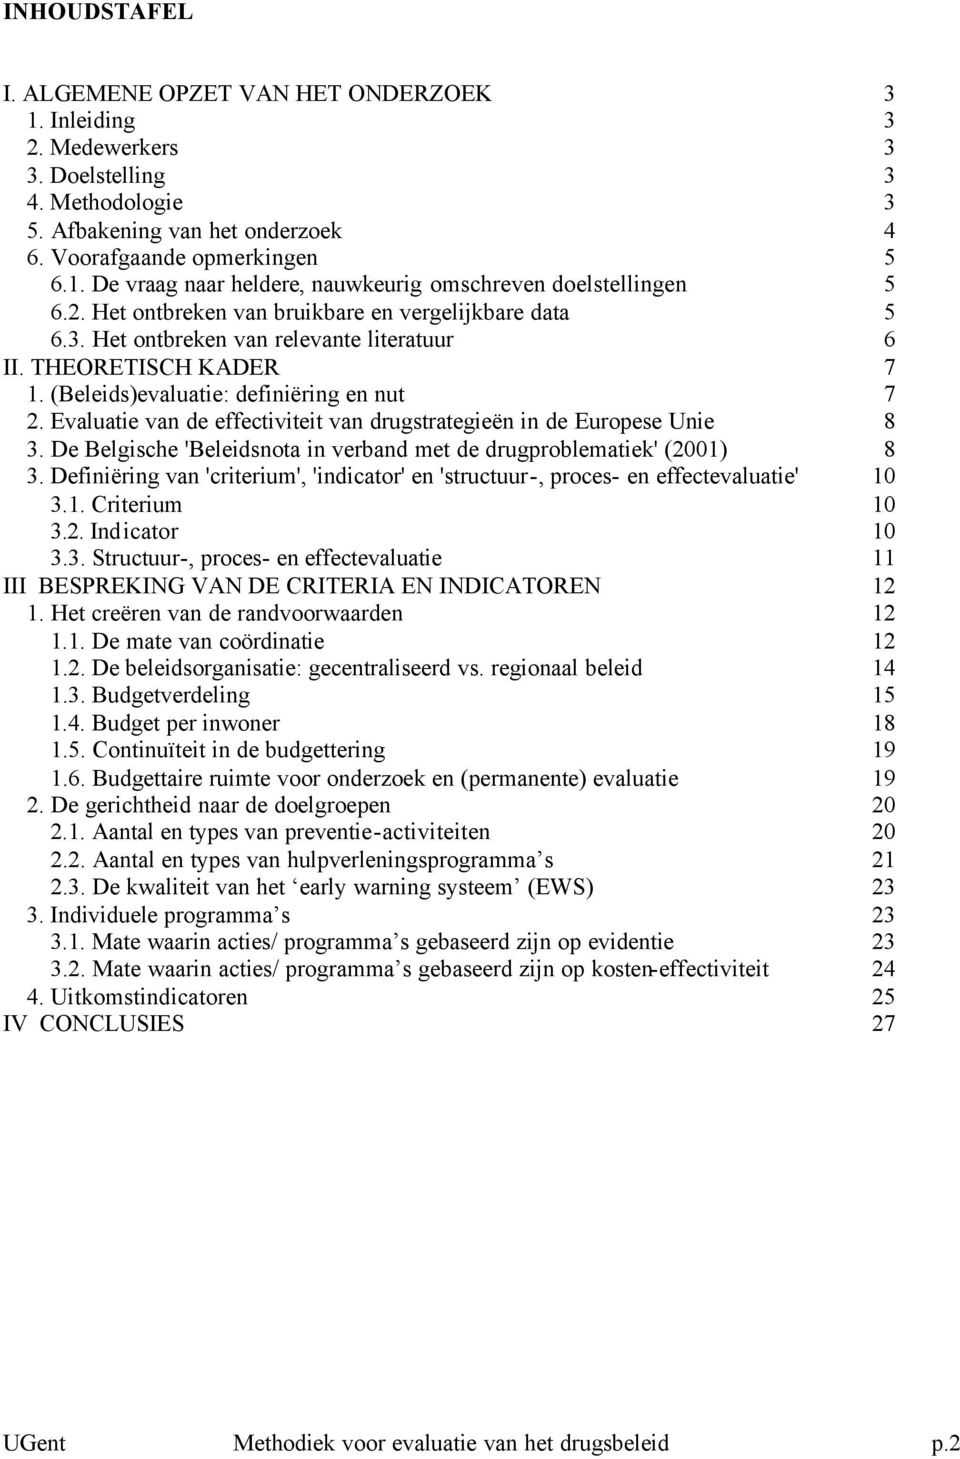 Evaluatie van de effectiviteit van drugstrategieën in de Europese Unie 8 3. De Belgische 'Beleidsnota in verband met de drugproblematiek' (2001) 8 3.